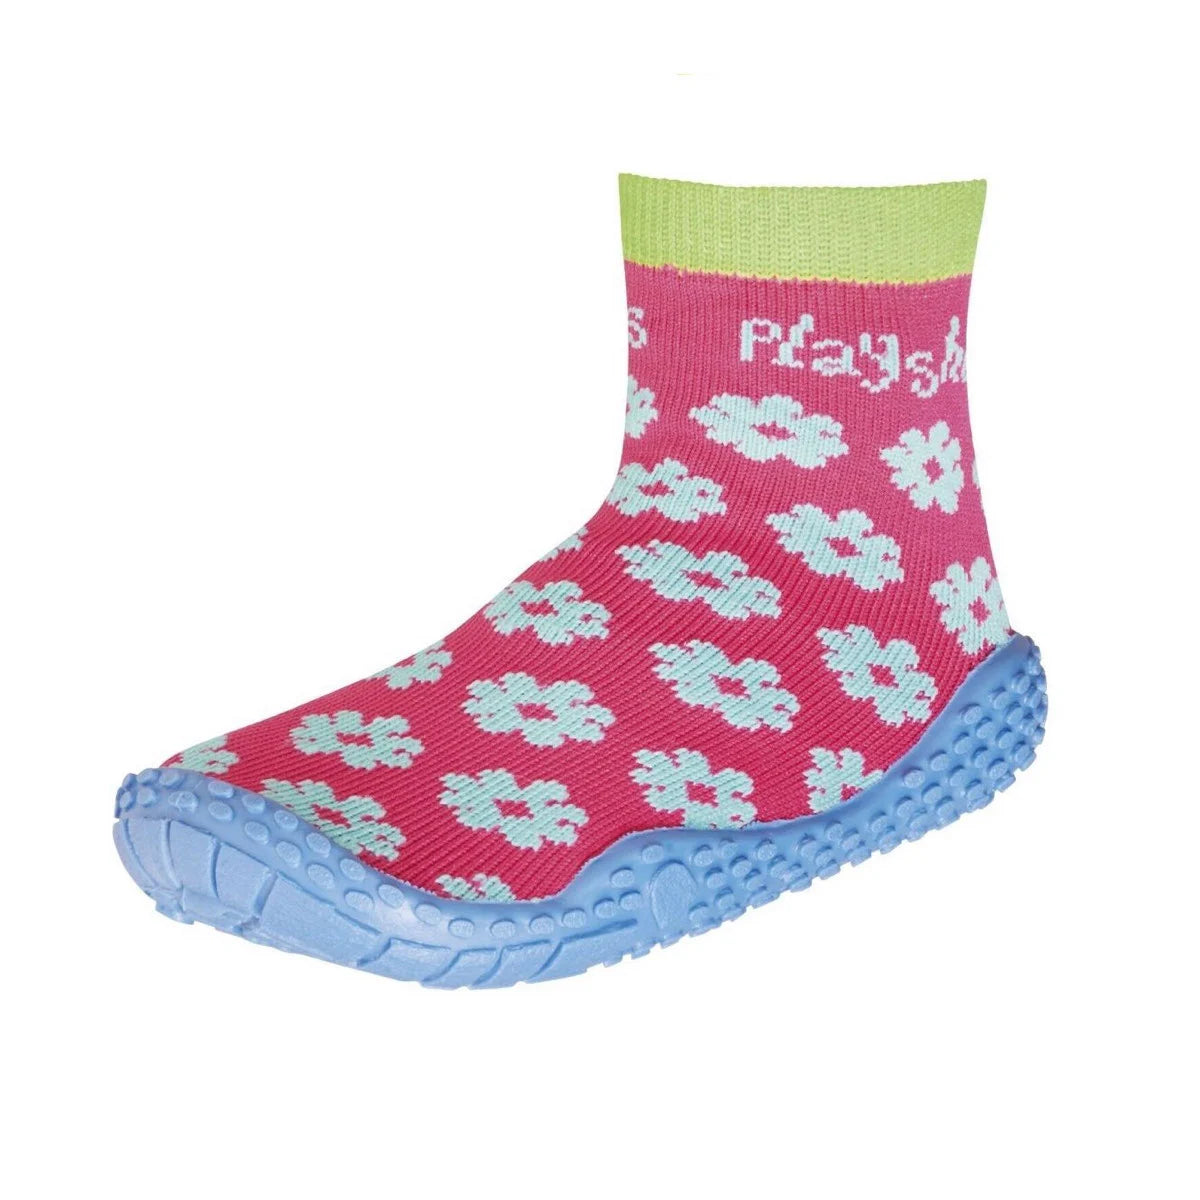 Aqua Socken für Kinder mit Blumenmotiv